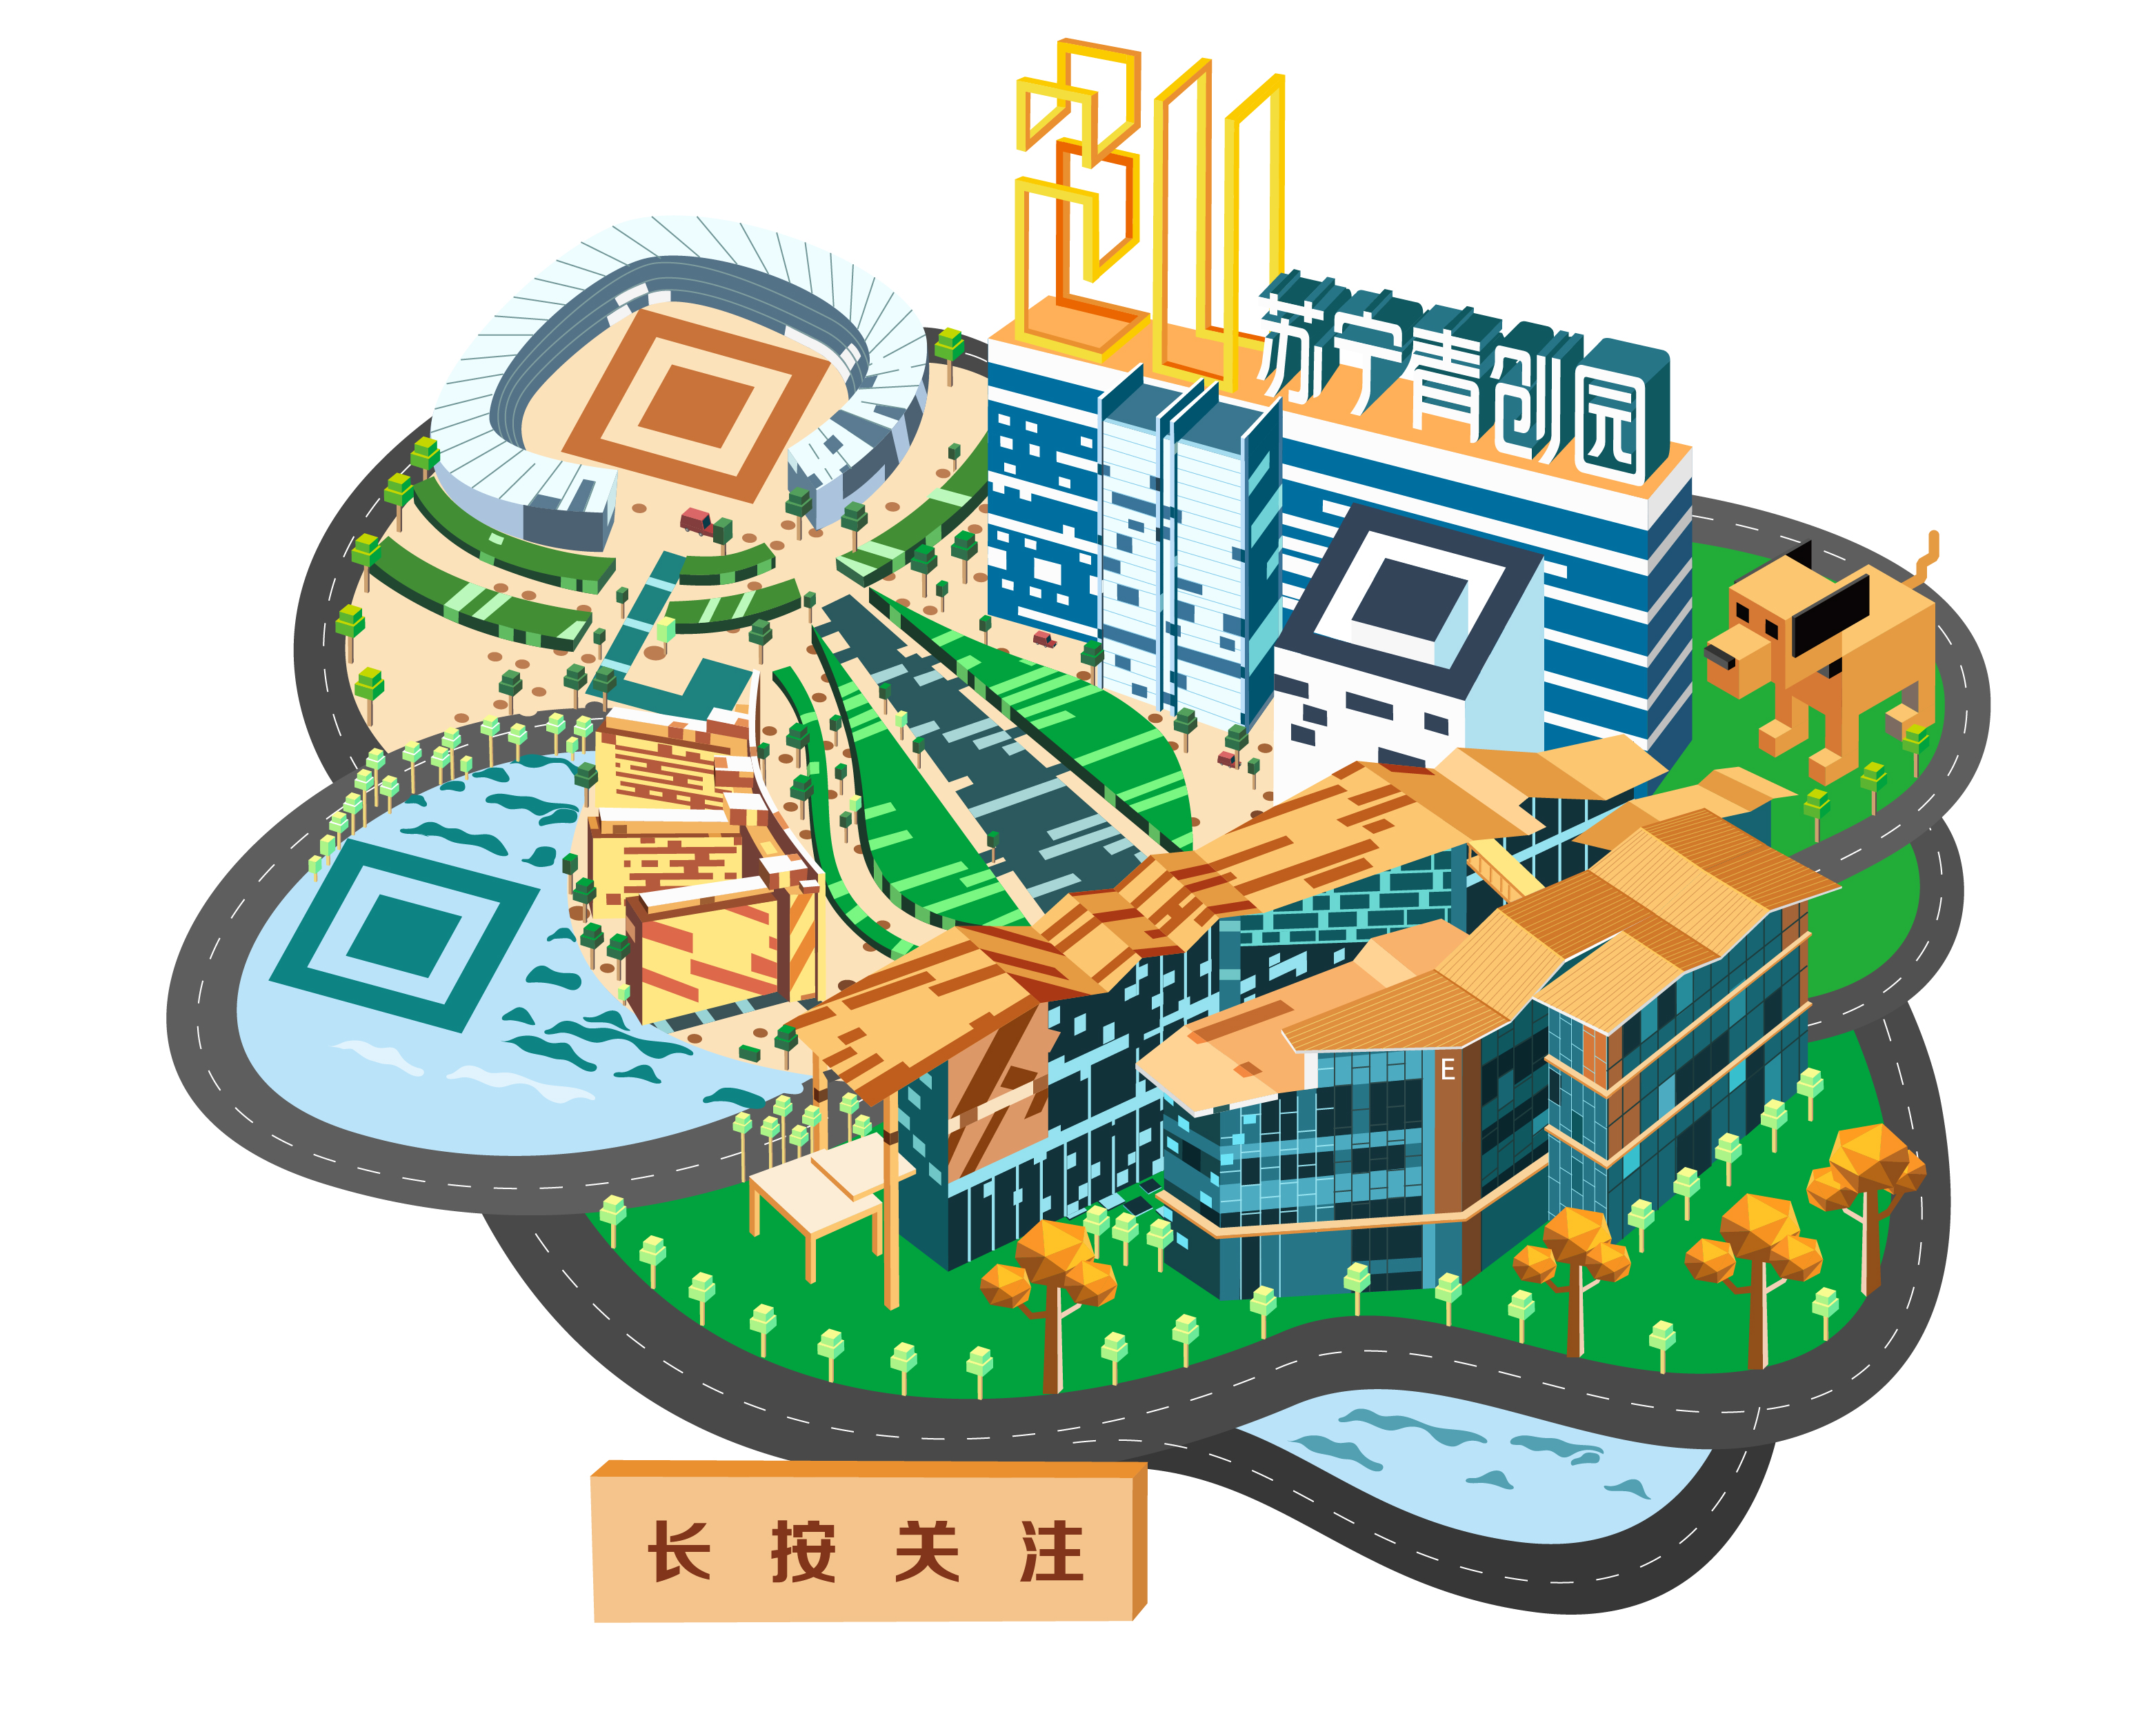 苏宁青创园立体静态艺术二维码-创意二维码-第九工场设计外包